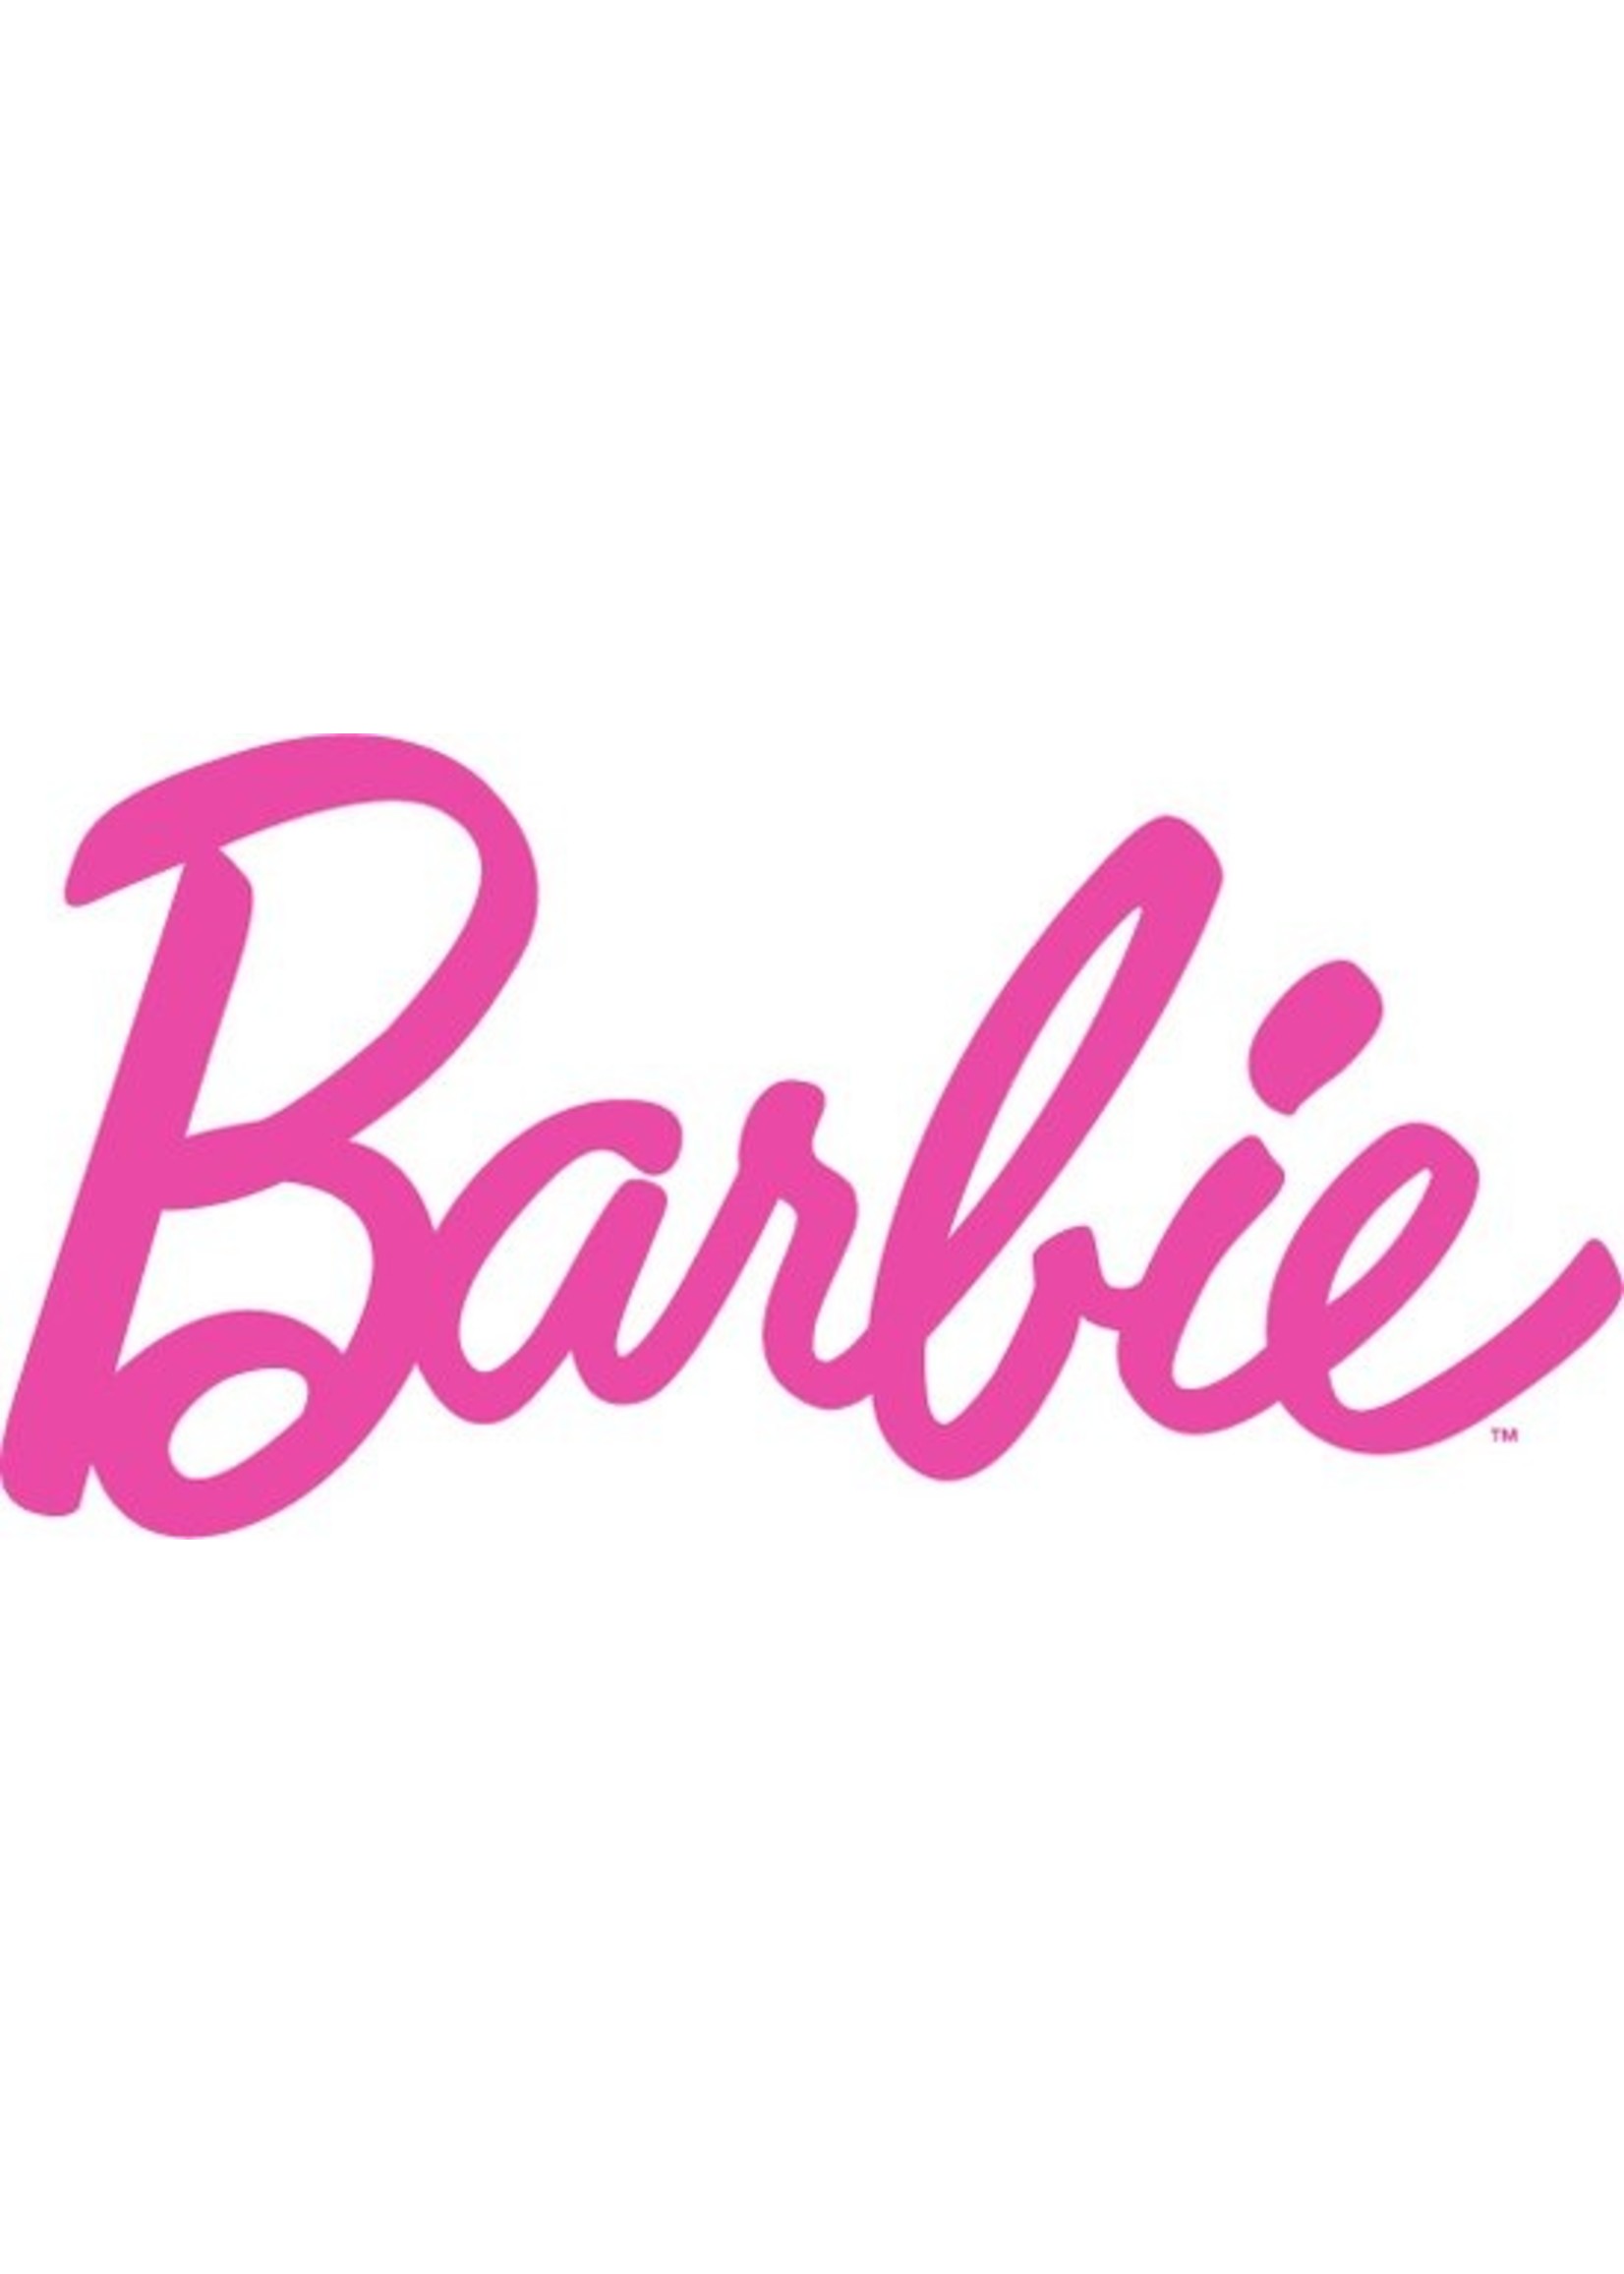 Barbie Barbie Paard met Pop